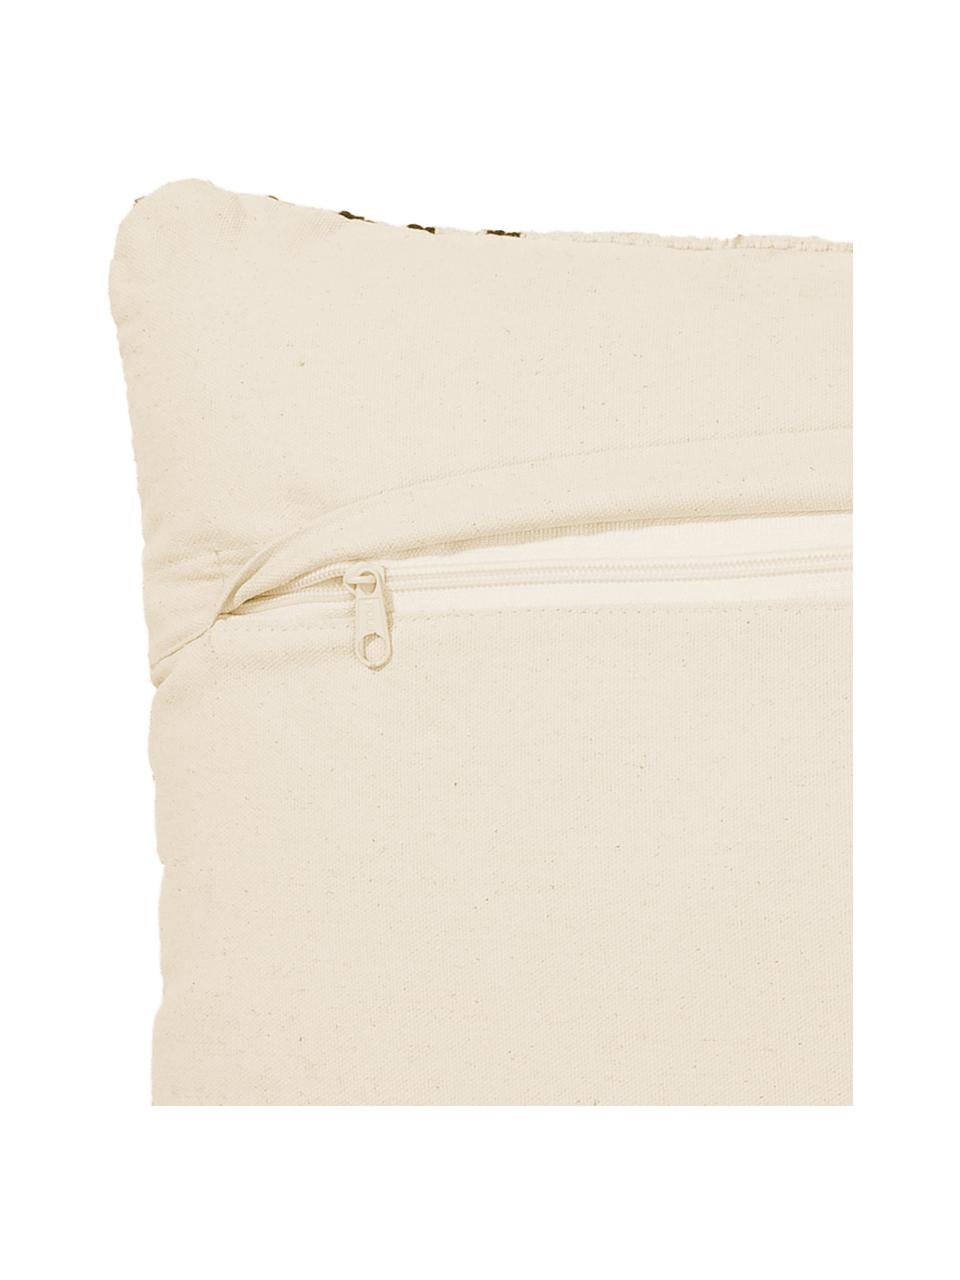 Poduszka z wypełnieniem Loa, 100% bawełna, Odcienie kremowego, czarny, S 40 x D 60 cm